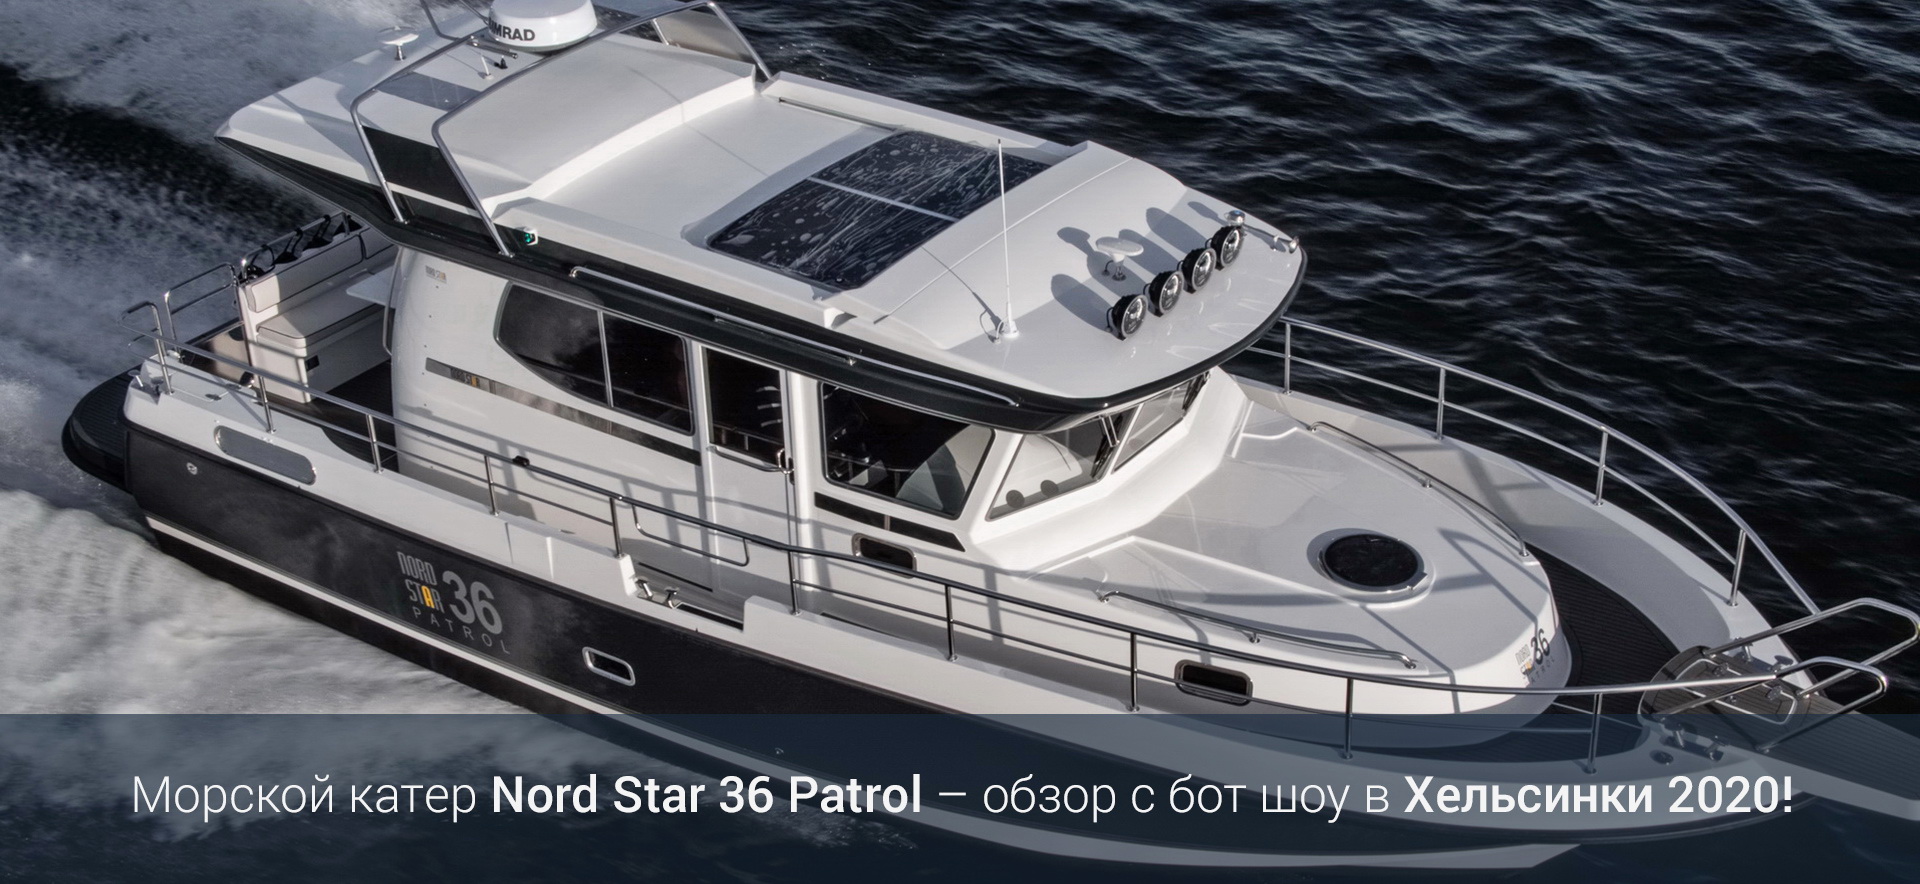 Морской катер Nord Star 36 Patrol – обзор с бот шоу в Хельсинки 2020!